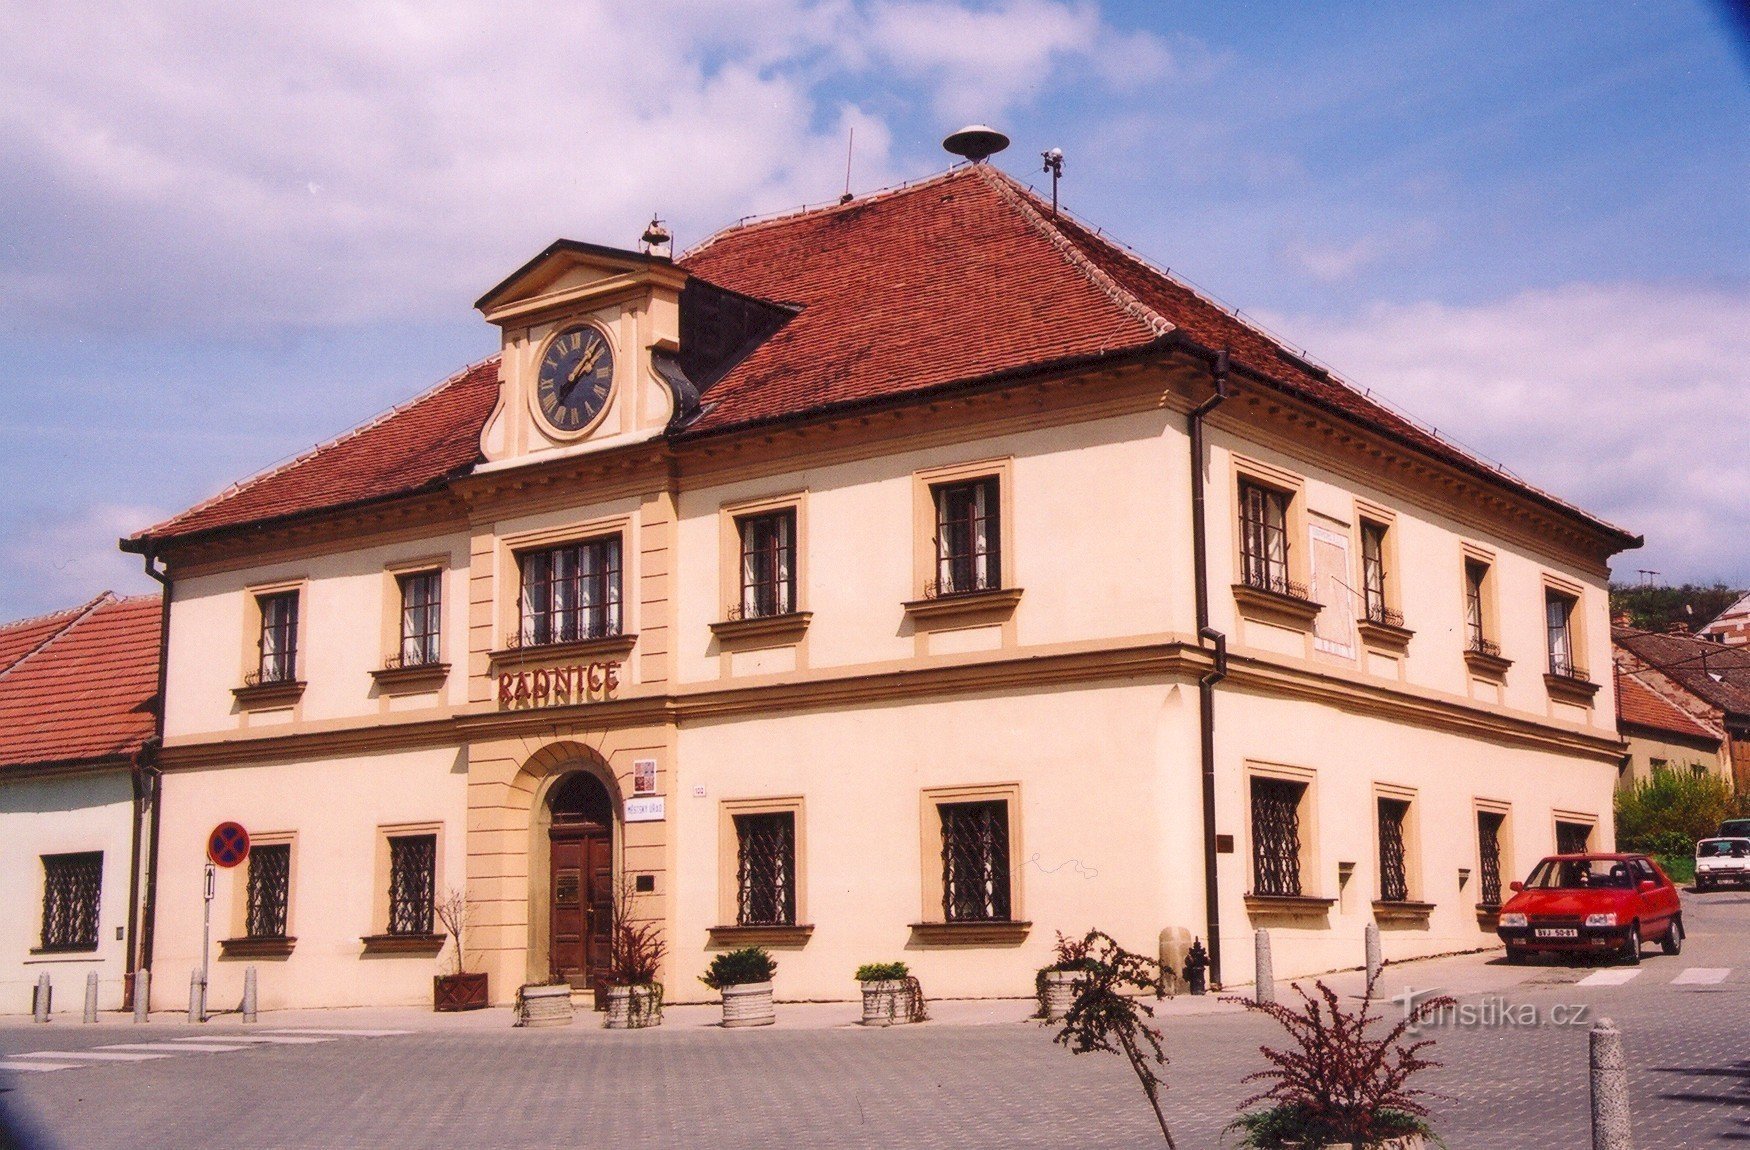 ジドロホヴィツェ - 市庁舎 (2004)